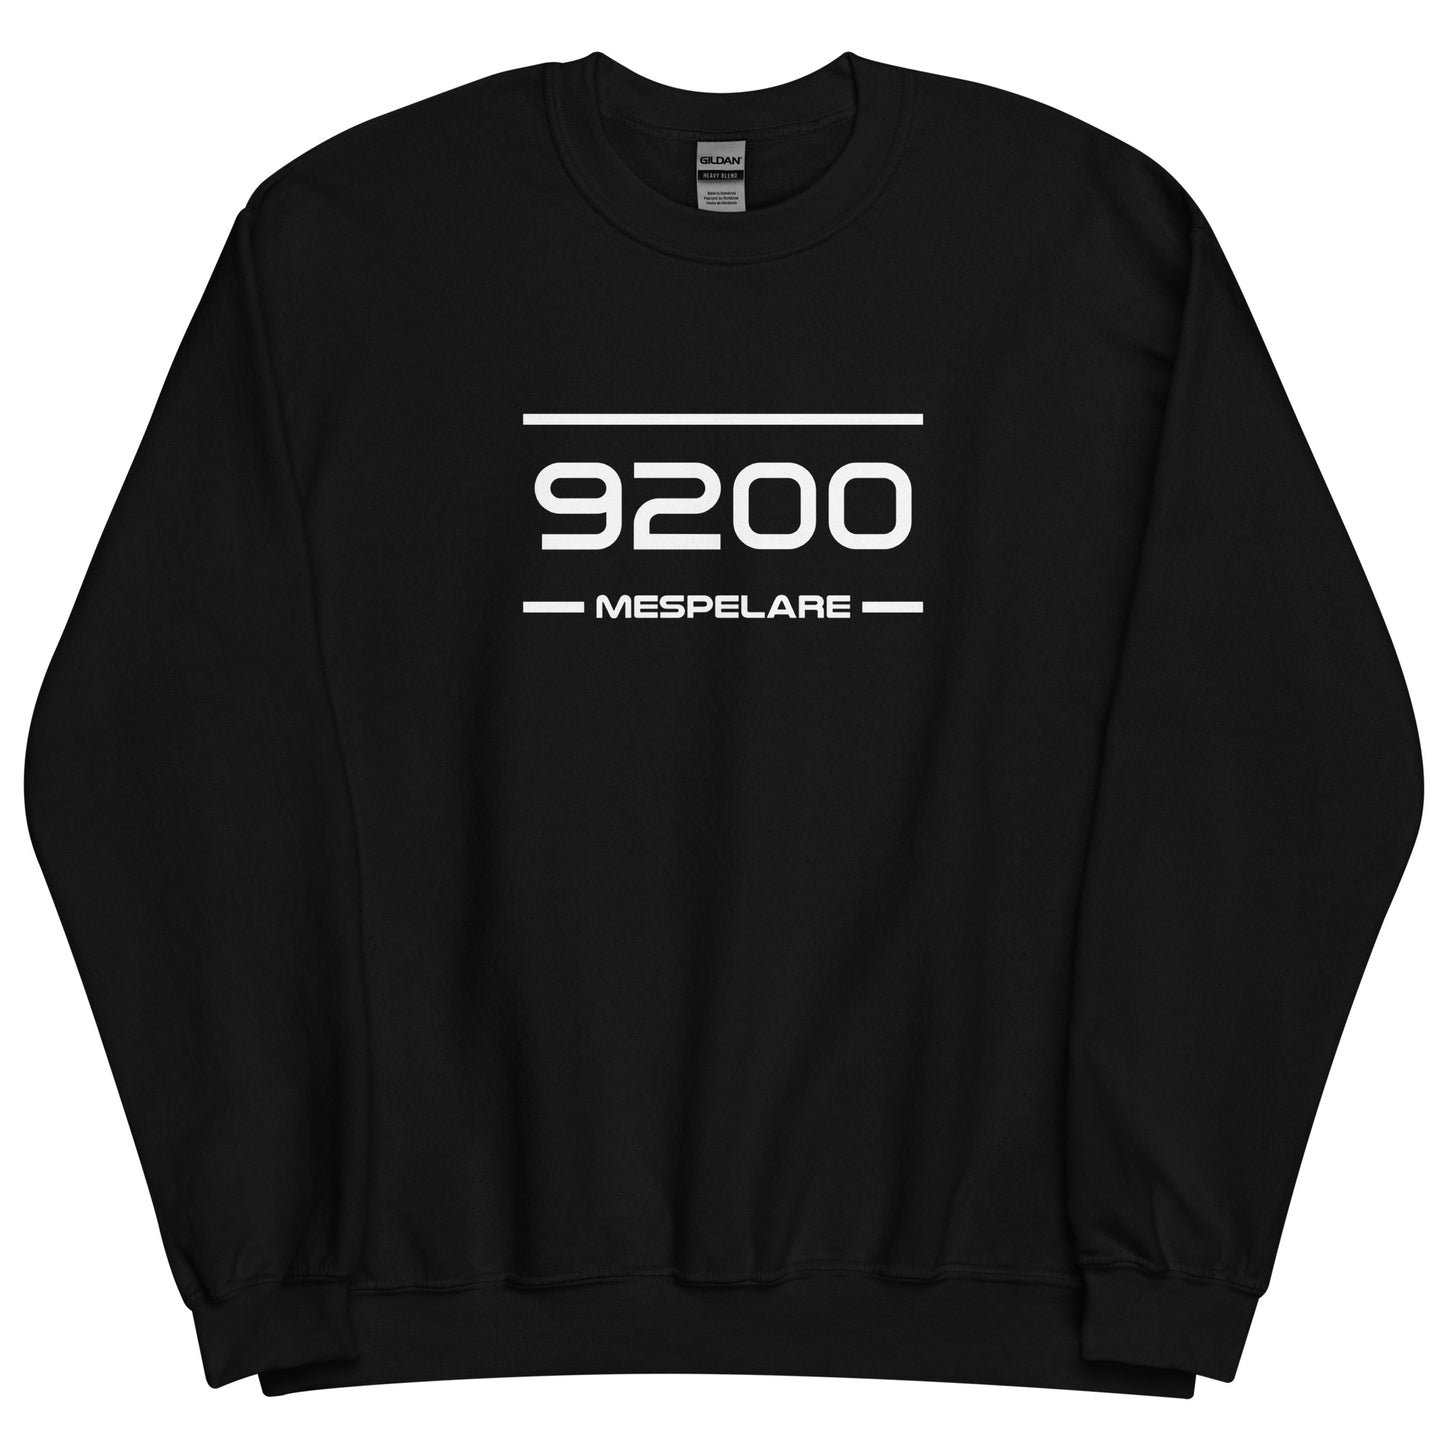 Sweater - 9200 - Mespelare (M/V)